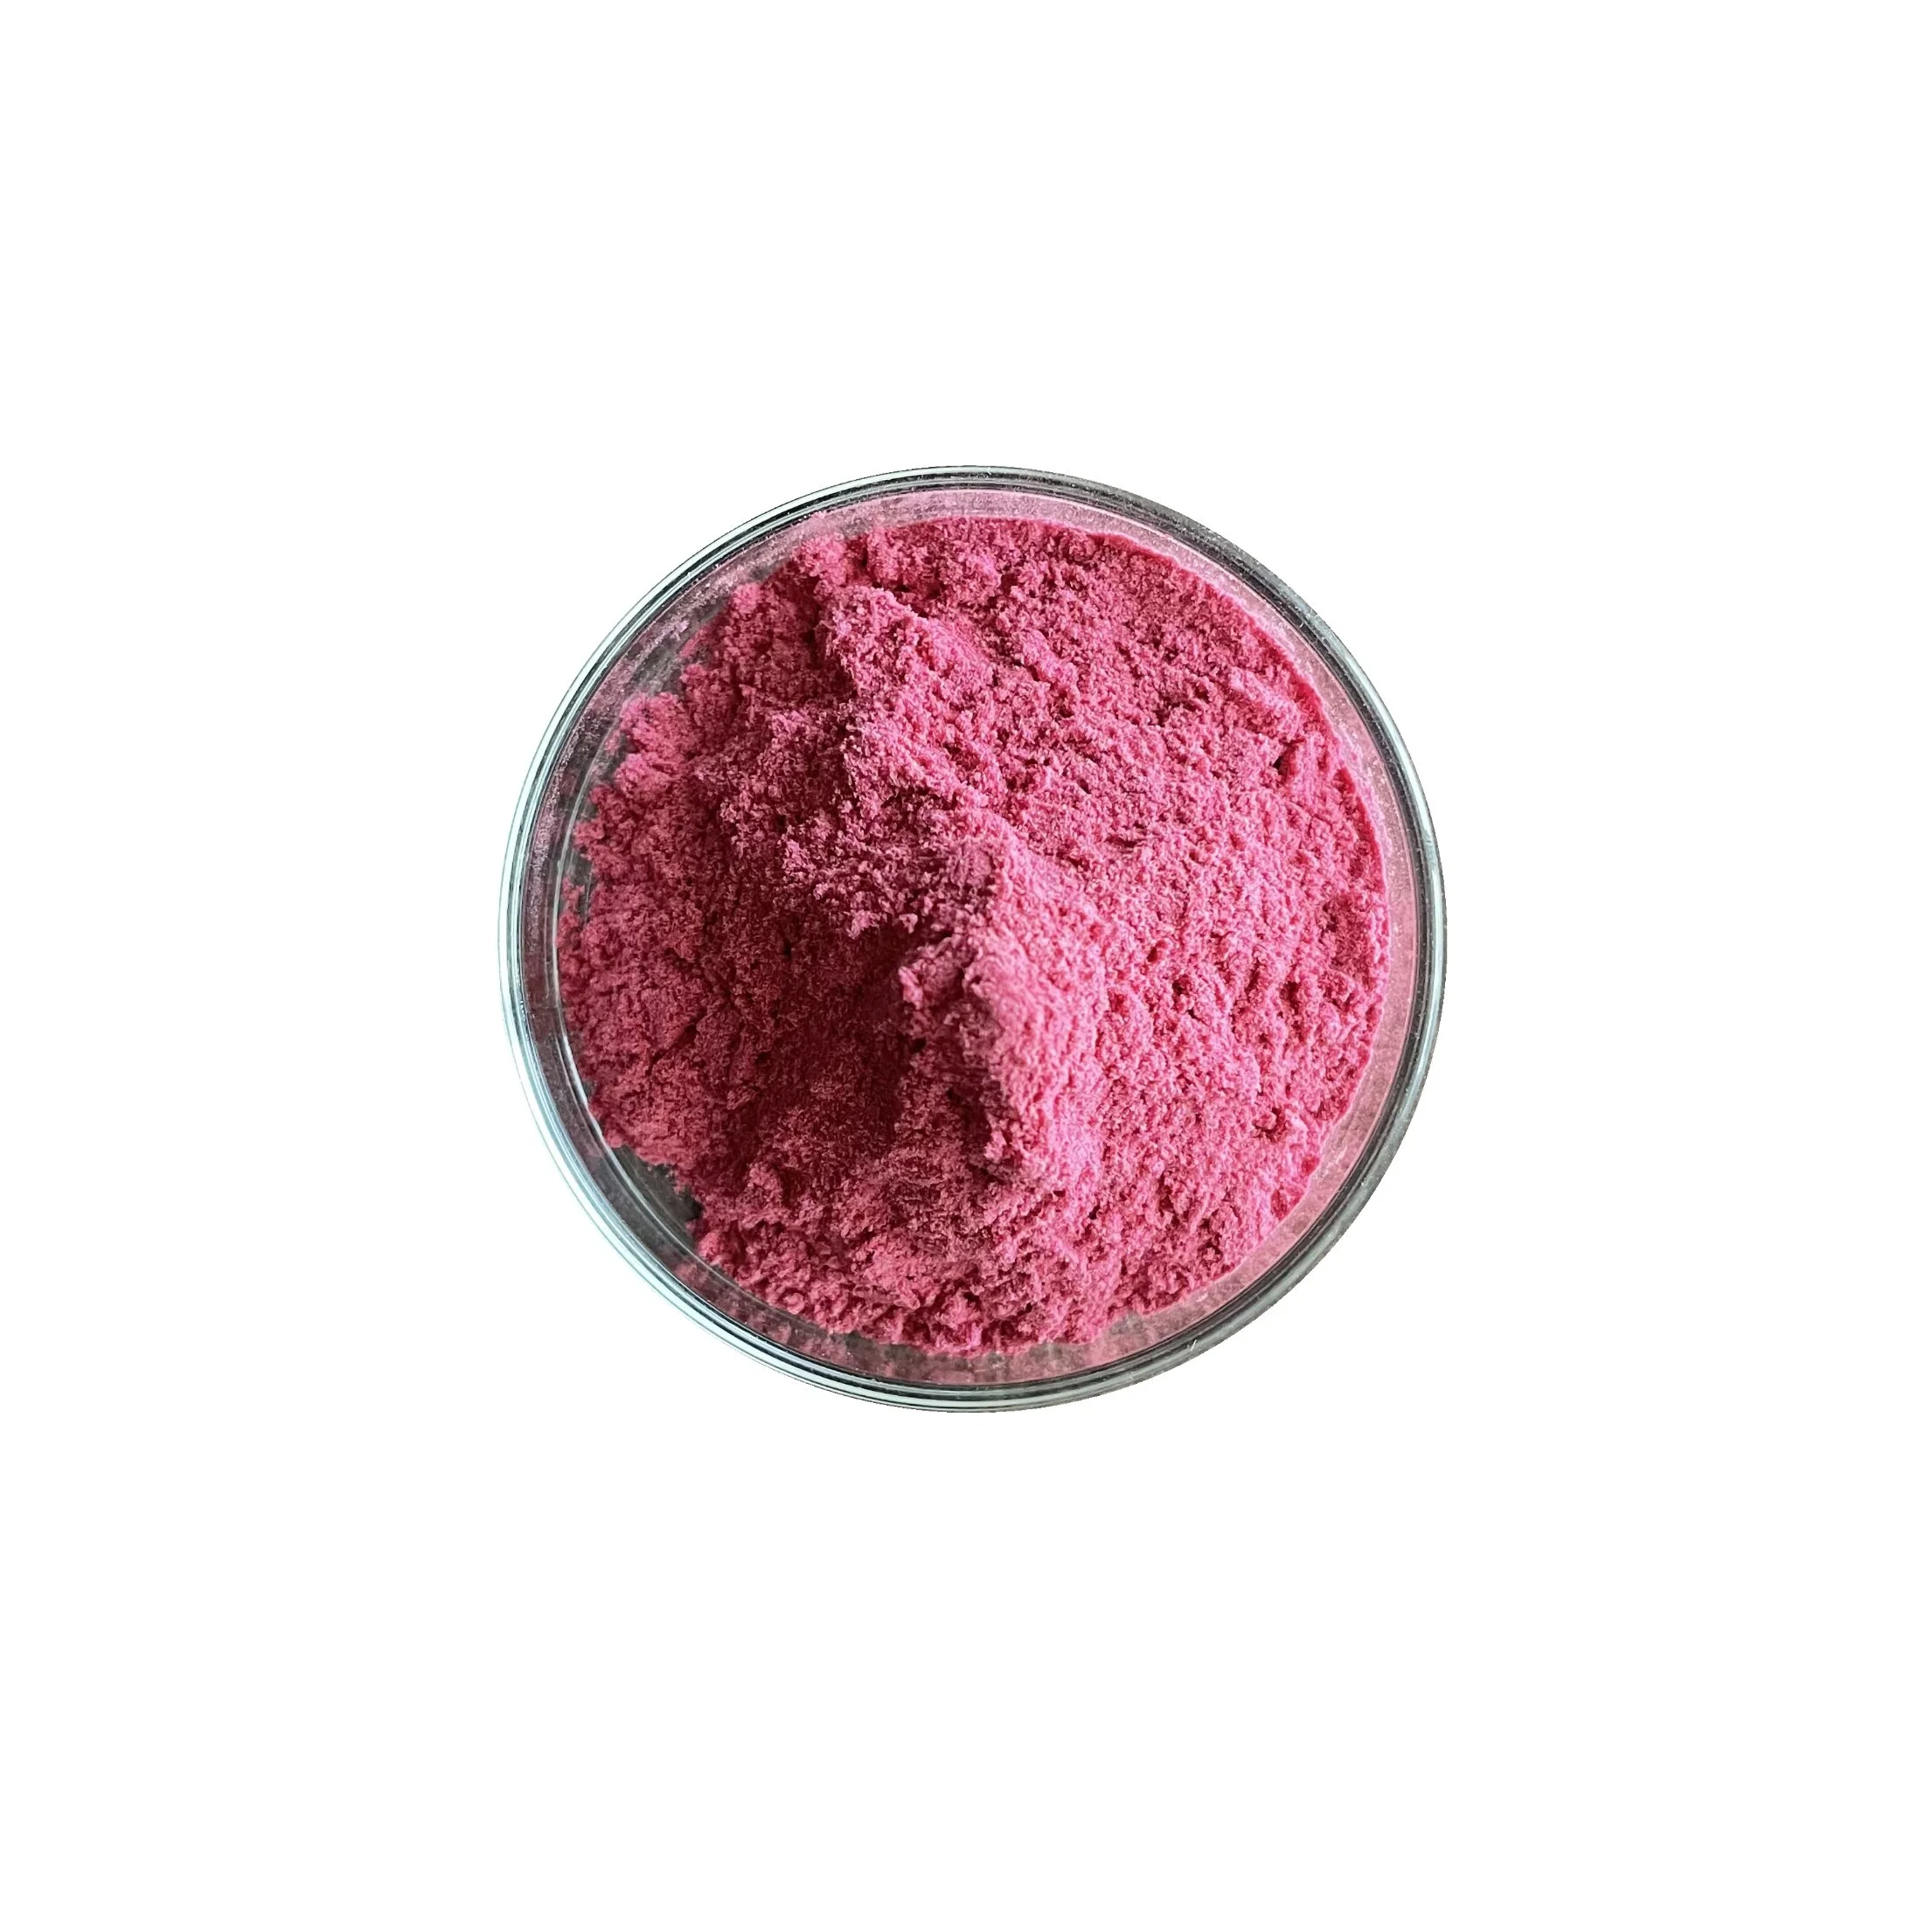 Pink Pitaya порошок заморозки сушеный натуральный красный Дракон фруктовый порошок